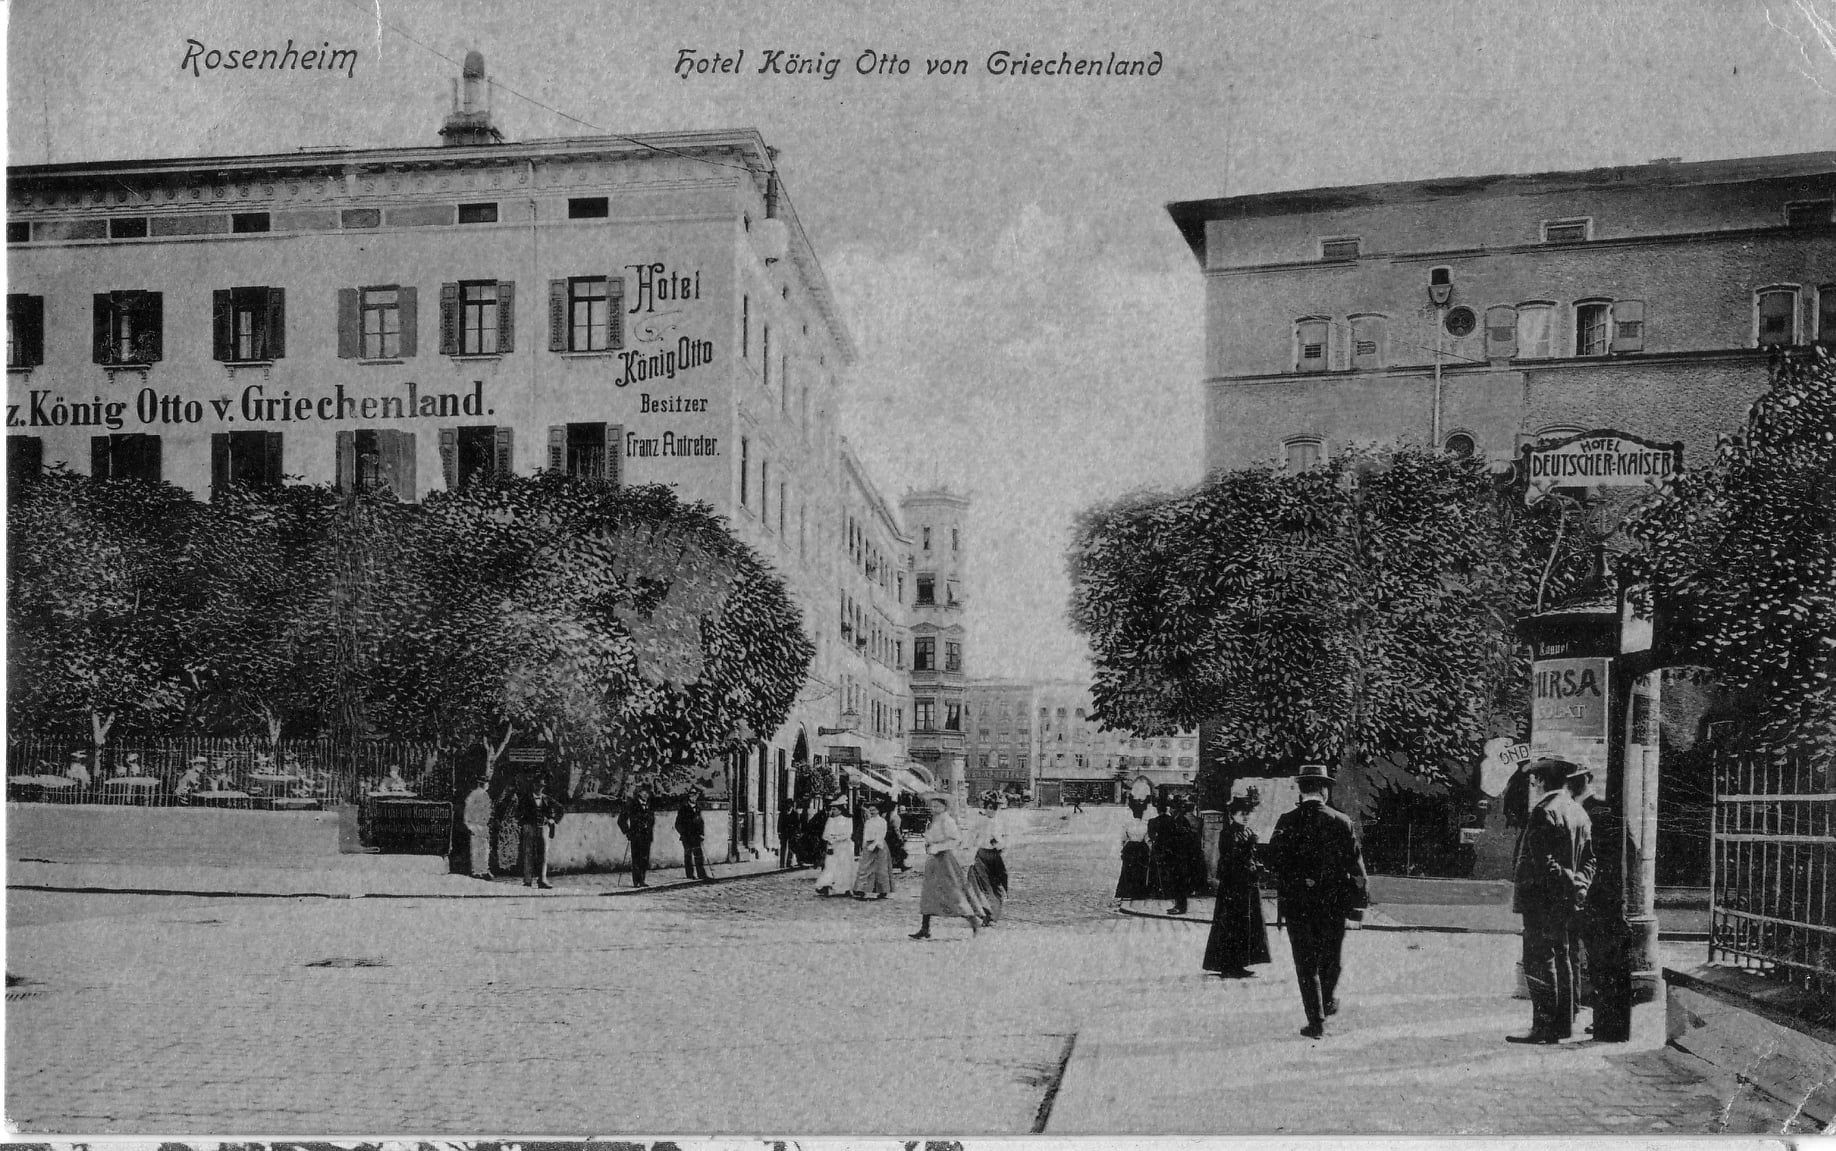 Koenig-Otto-Kreuzung in Rosenheim im Jahr 1909